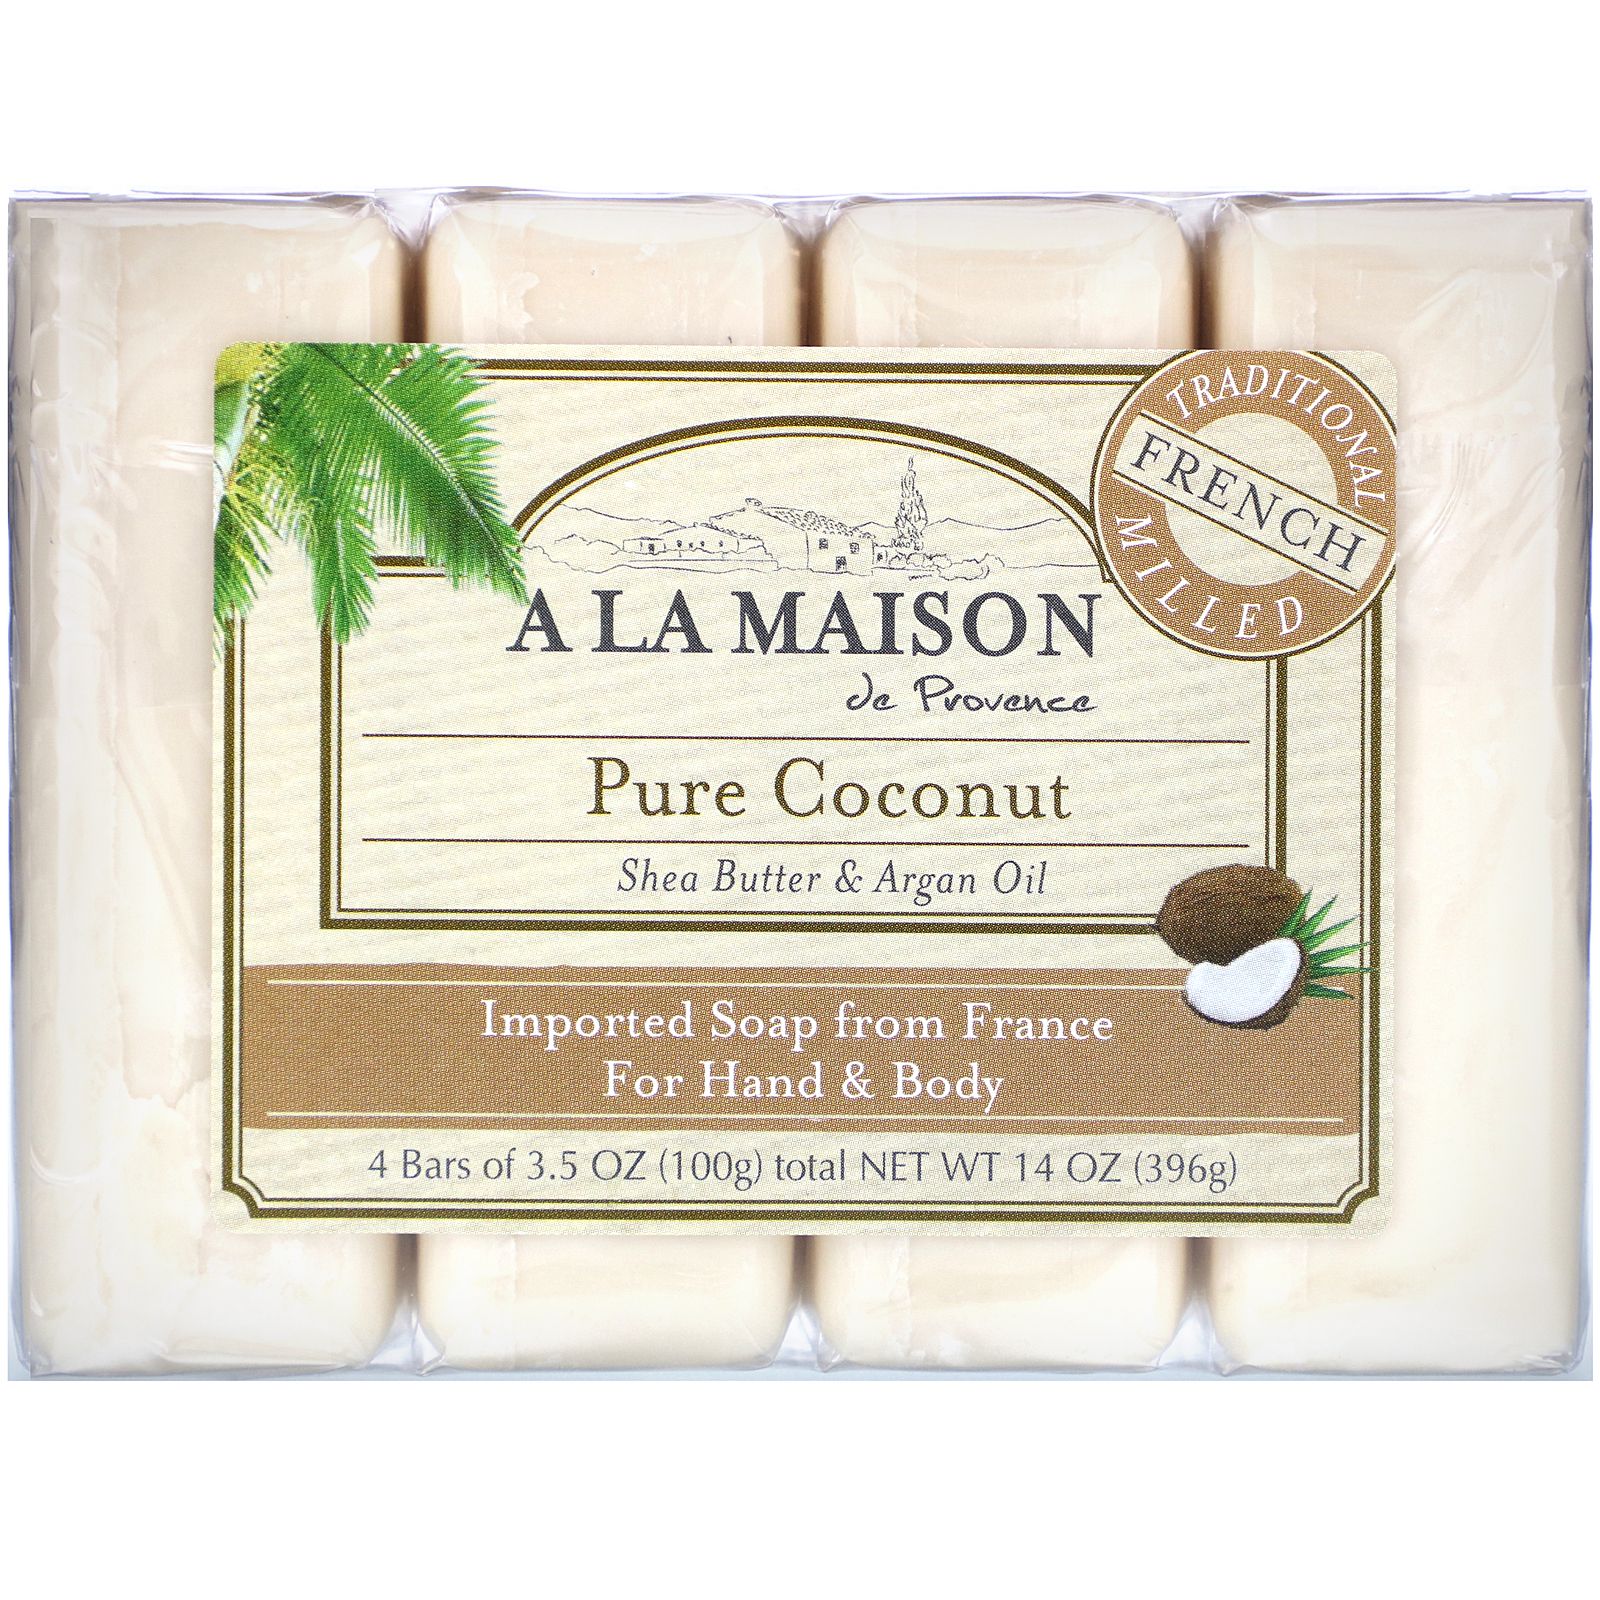 A La Maison de Provence Мыло для рук & тела Чистый кокос 4 бруска по 3.5 унции a la maison de provence кусковое мыло для рук и тела с овсяным молоком 4 куска по 100 г 3 5 унции каждый